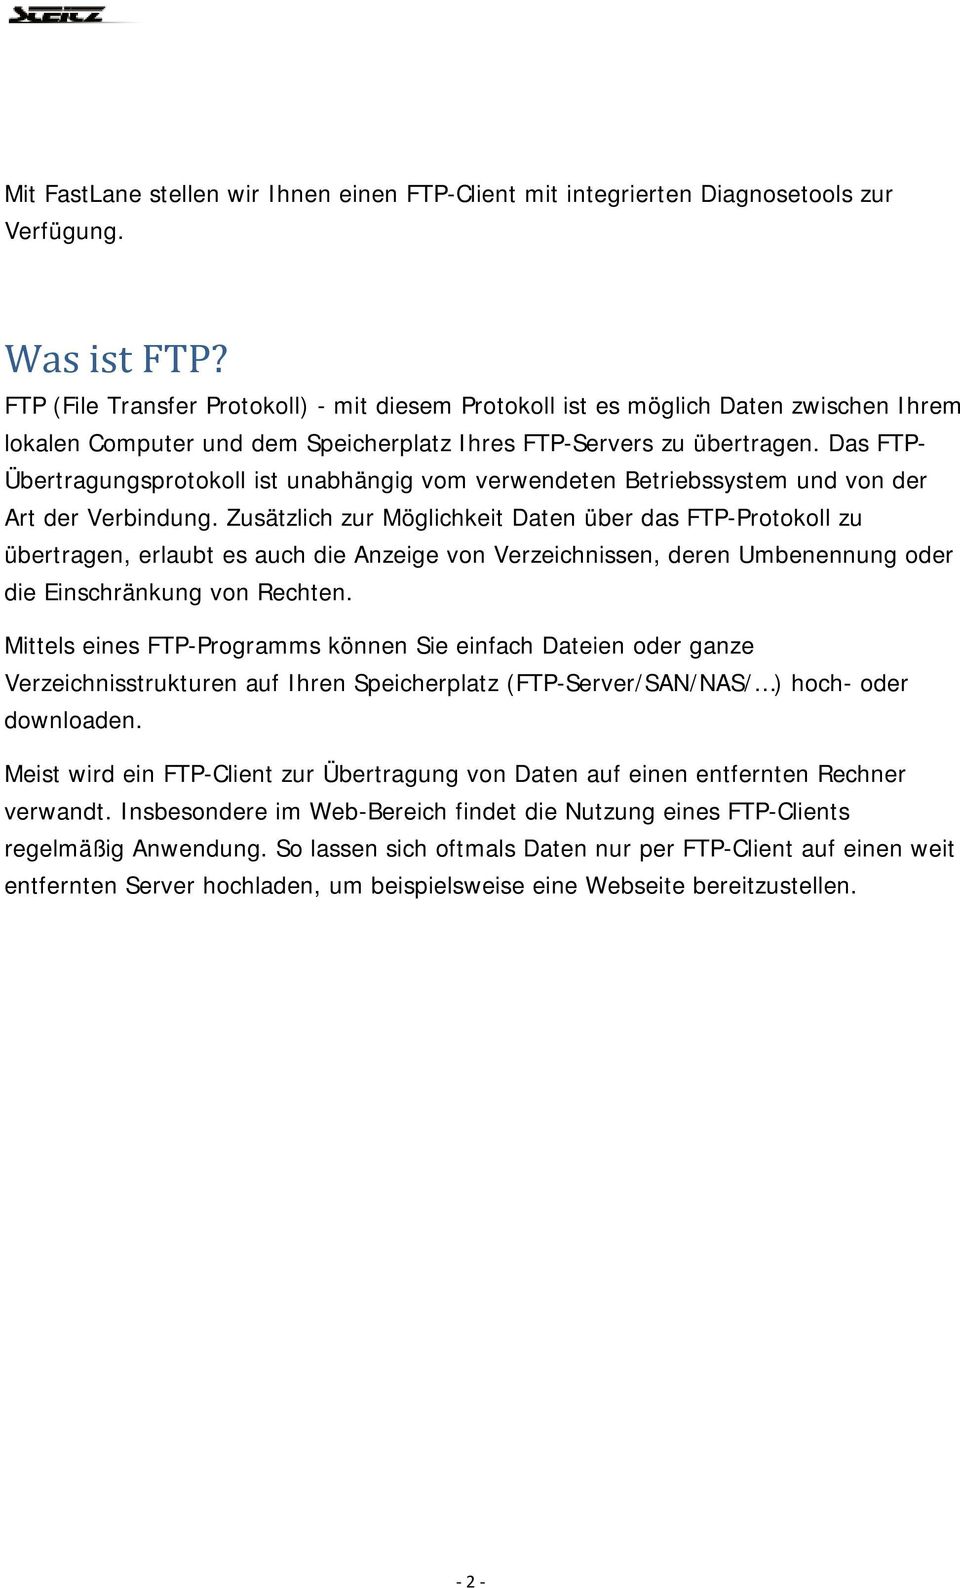 Das FTP- Übertragungsprotokoll ist unabhängig vom verwendeten Betriebssystem und von der Art der Verbindung.